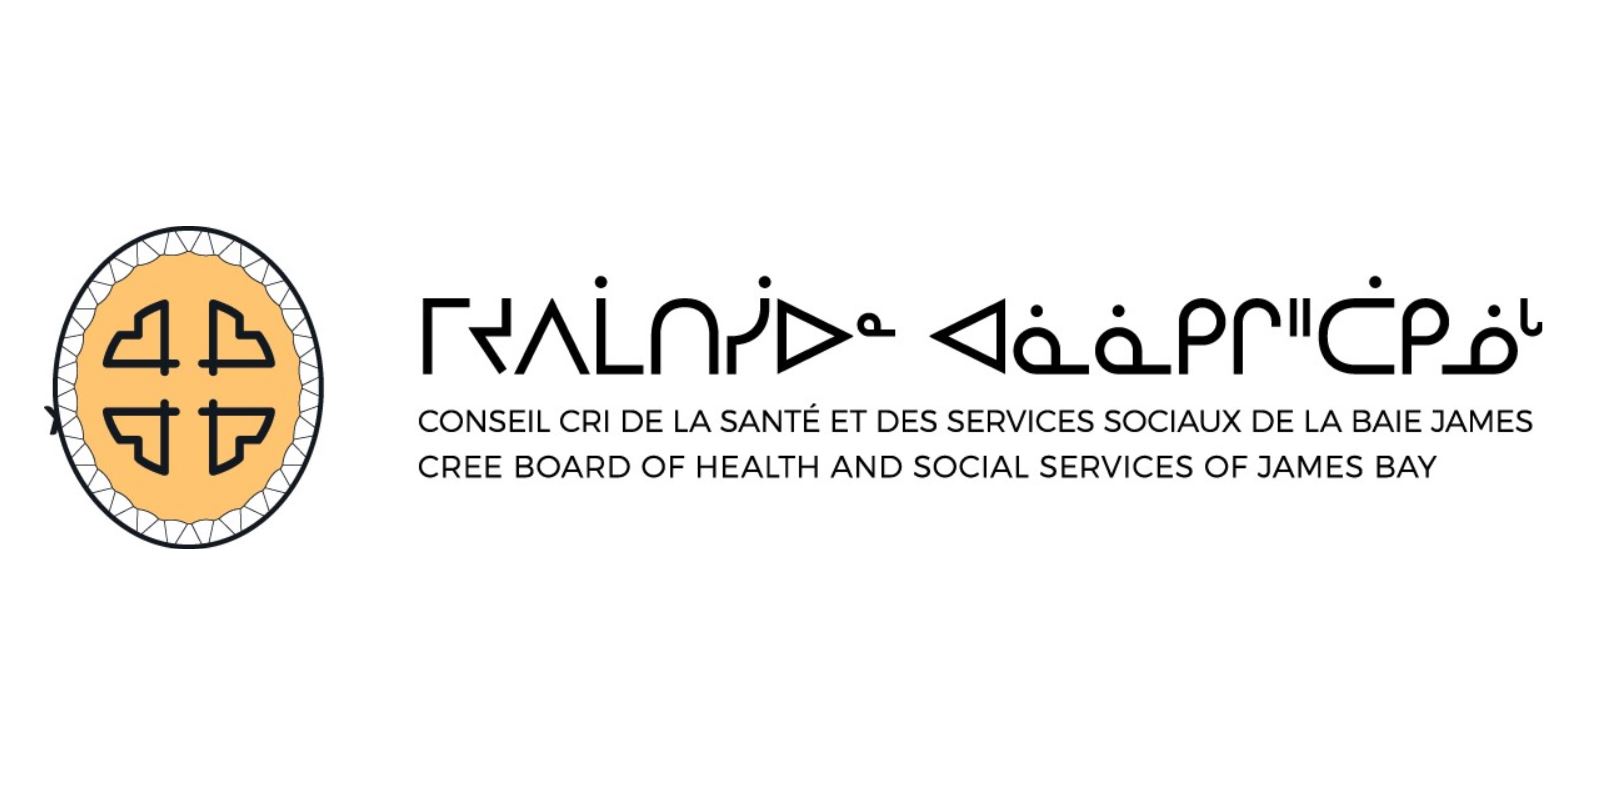 Conseil Cri de la santé et des services sociaux de la Baie-James